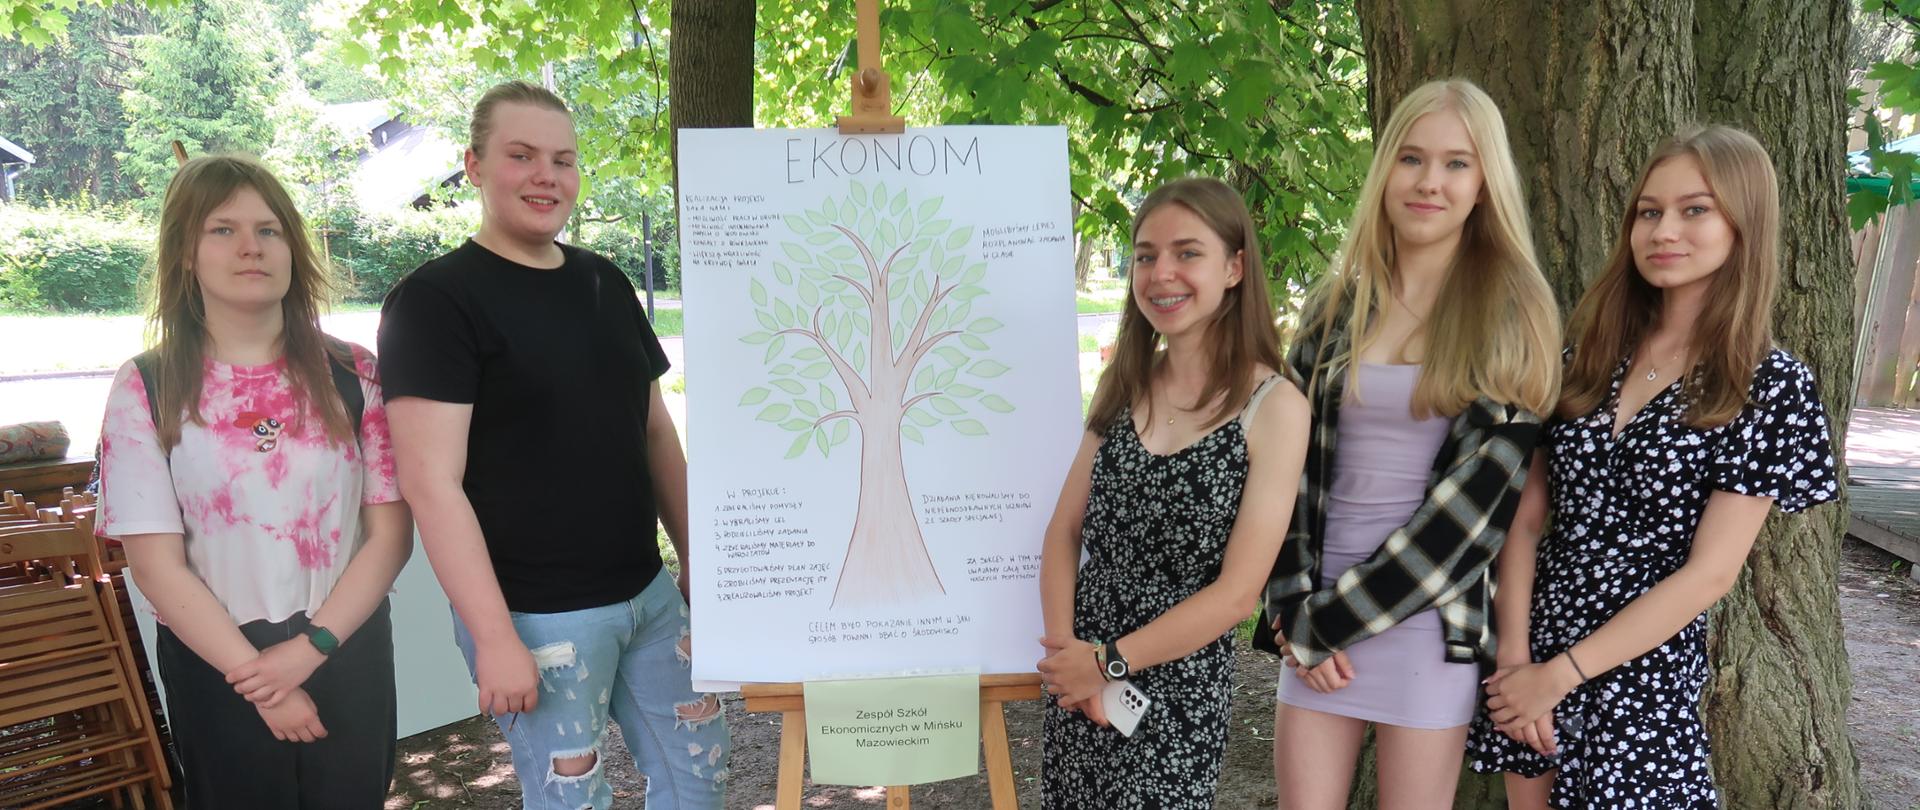 Uczniowie prezentują planszę z napisem "Ekonom" i narysowanym drzewem